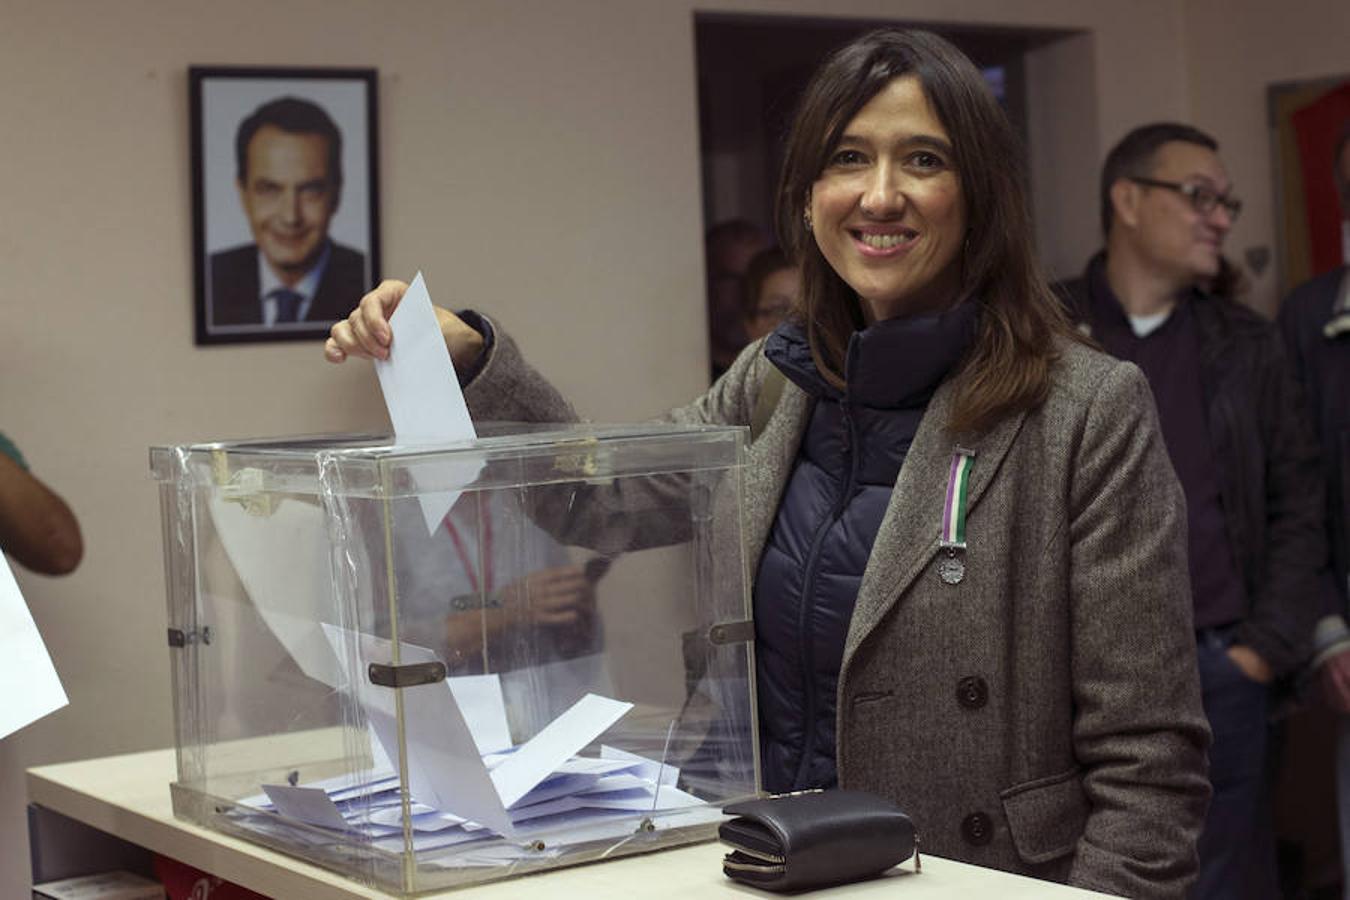 La candidata ha votado en Santa Coloma de Gramenet en un momento de tensión en las relaciones con el PSOE por el rechazo frontal de los socialistas catalanes a facilitar la investidura de Mariano Rajoy